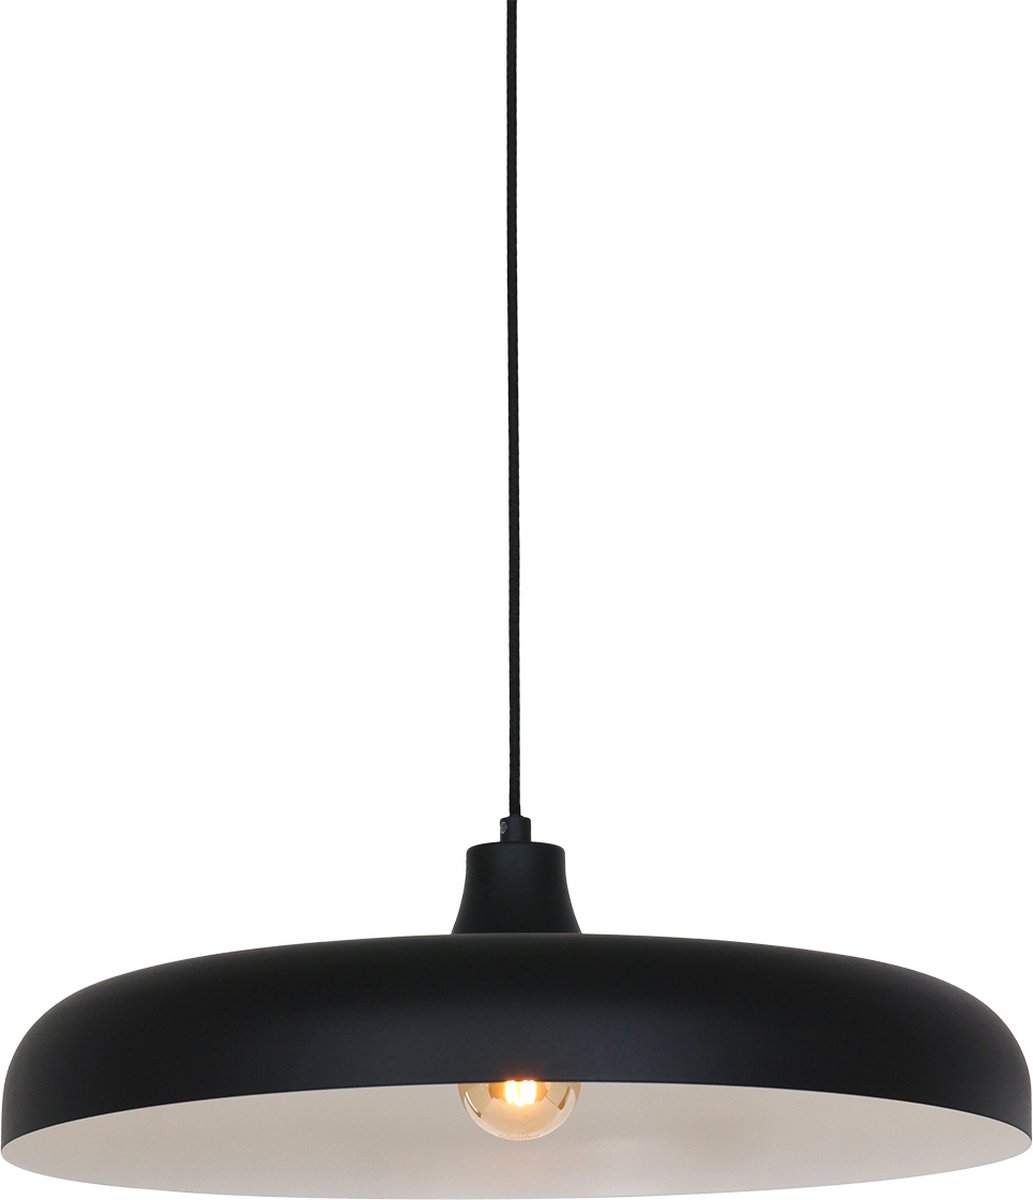 Hanglamp - Bussandri Limited - Design - Metaal - Design - E27 - L: 55cm - Voor Binnen - Woonkamer - Eetkamer - Zwart